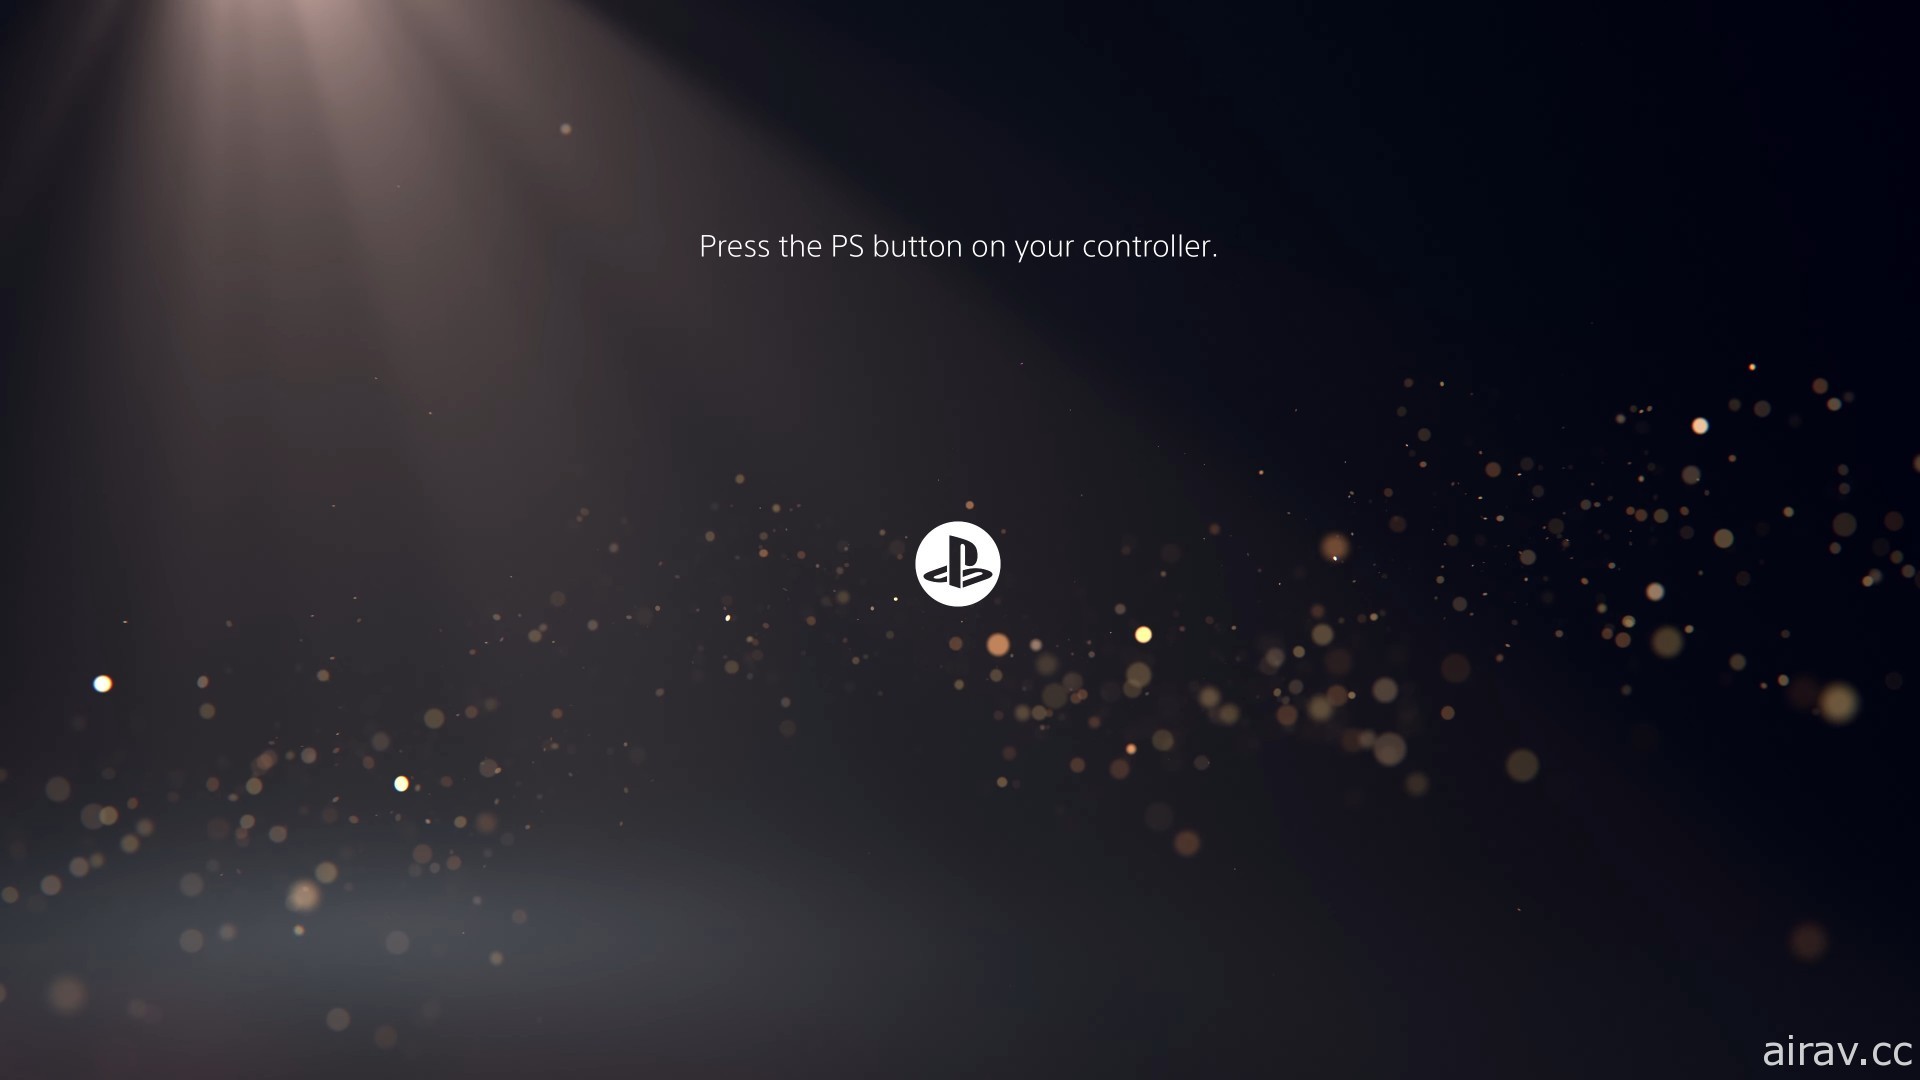 PlayStation 5 使用者介面首度曝光 導入控制中心、行動、遊戲輔助等全新功能